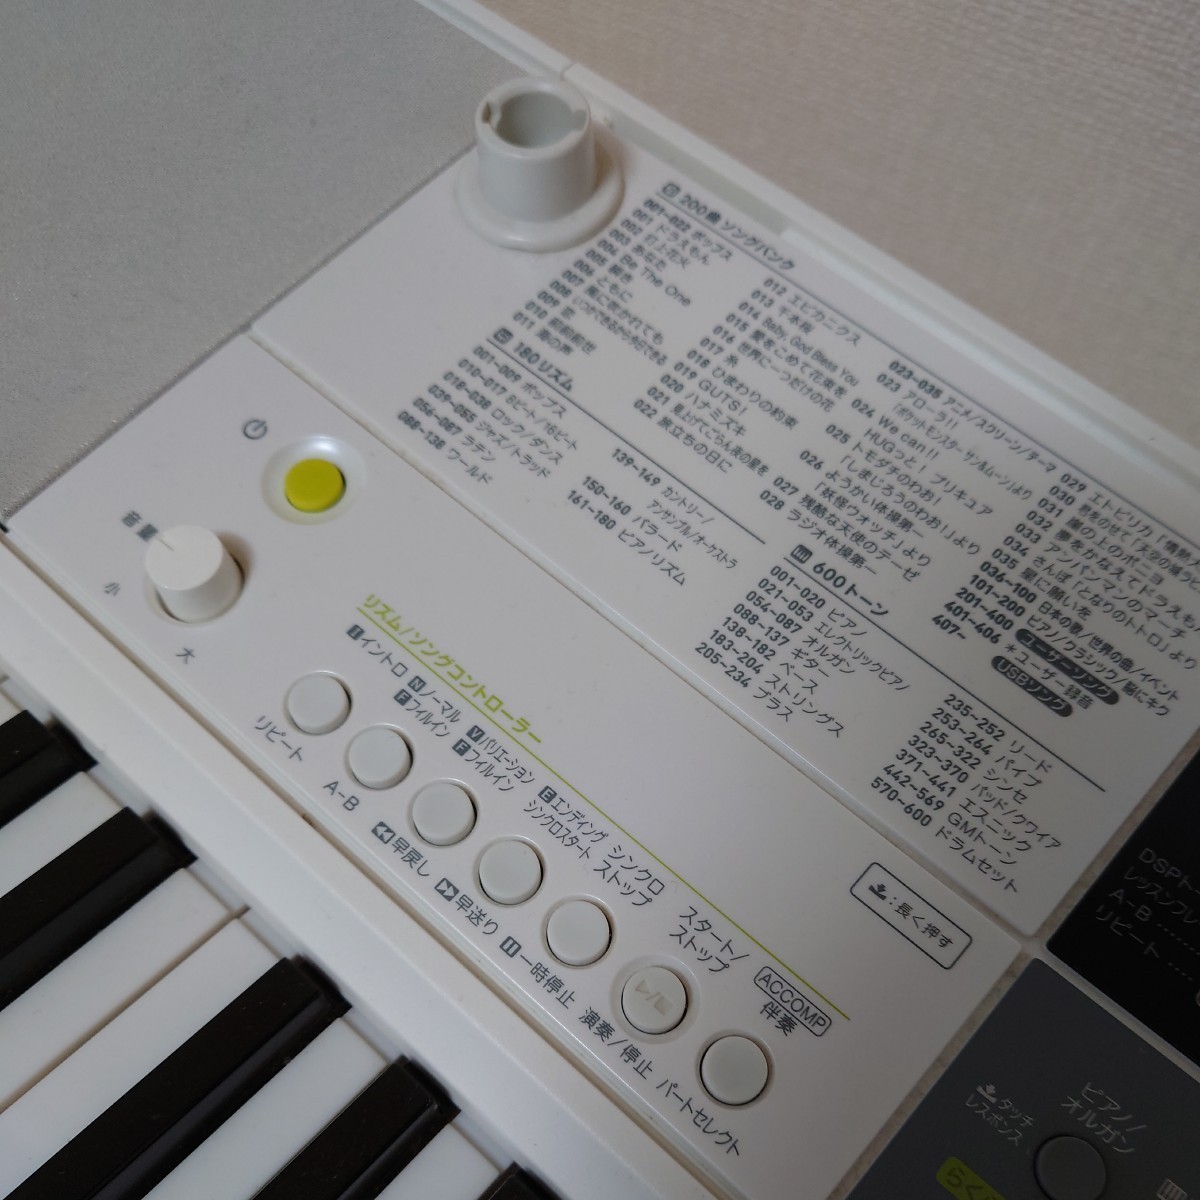 CASIO 光ナビゲーションキーボードLK -511 動作確認済み カシオ純正CS-4B キーボードスタンド付き電子ピアノ 音楽 楽器 打ち込み ドラム_画像8